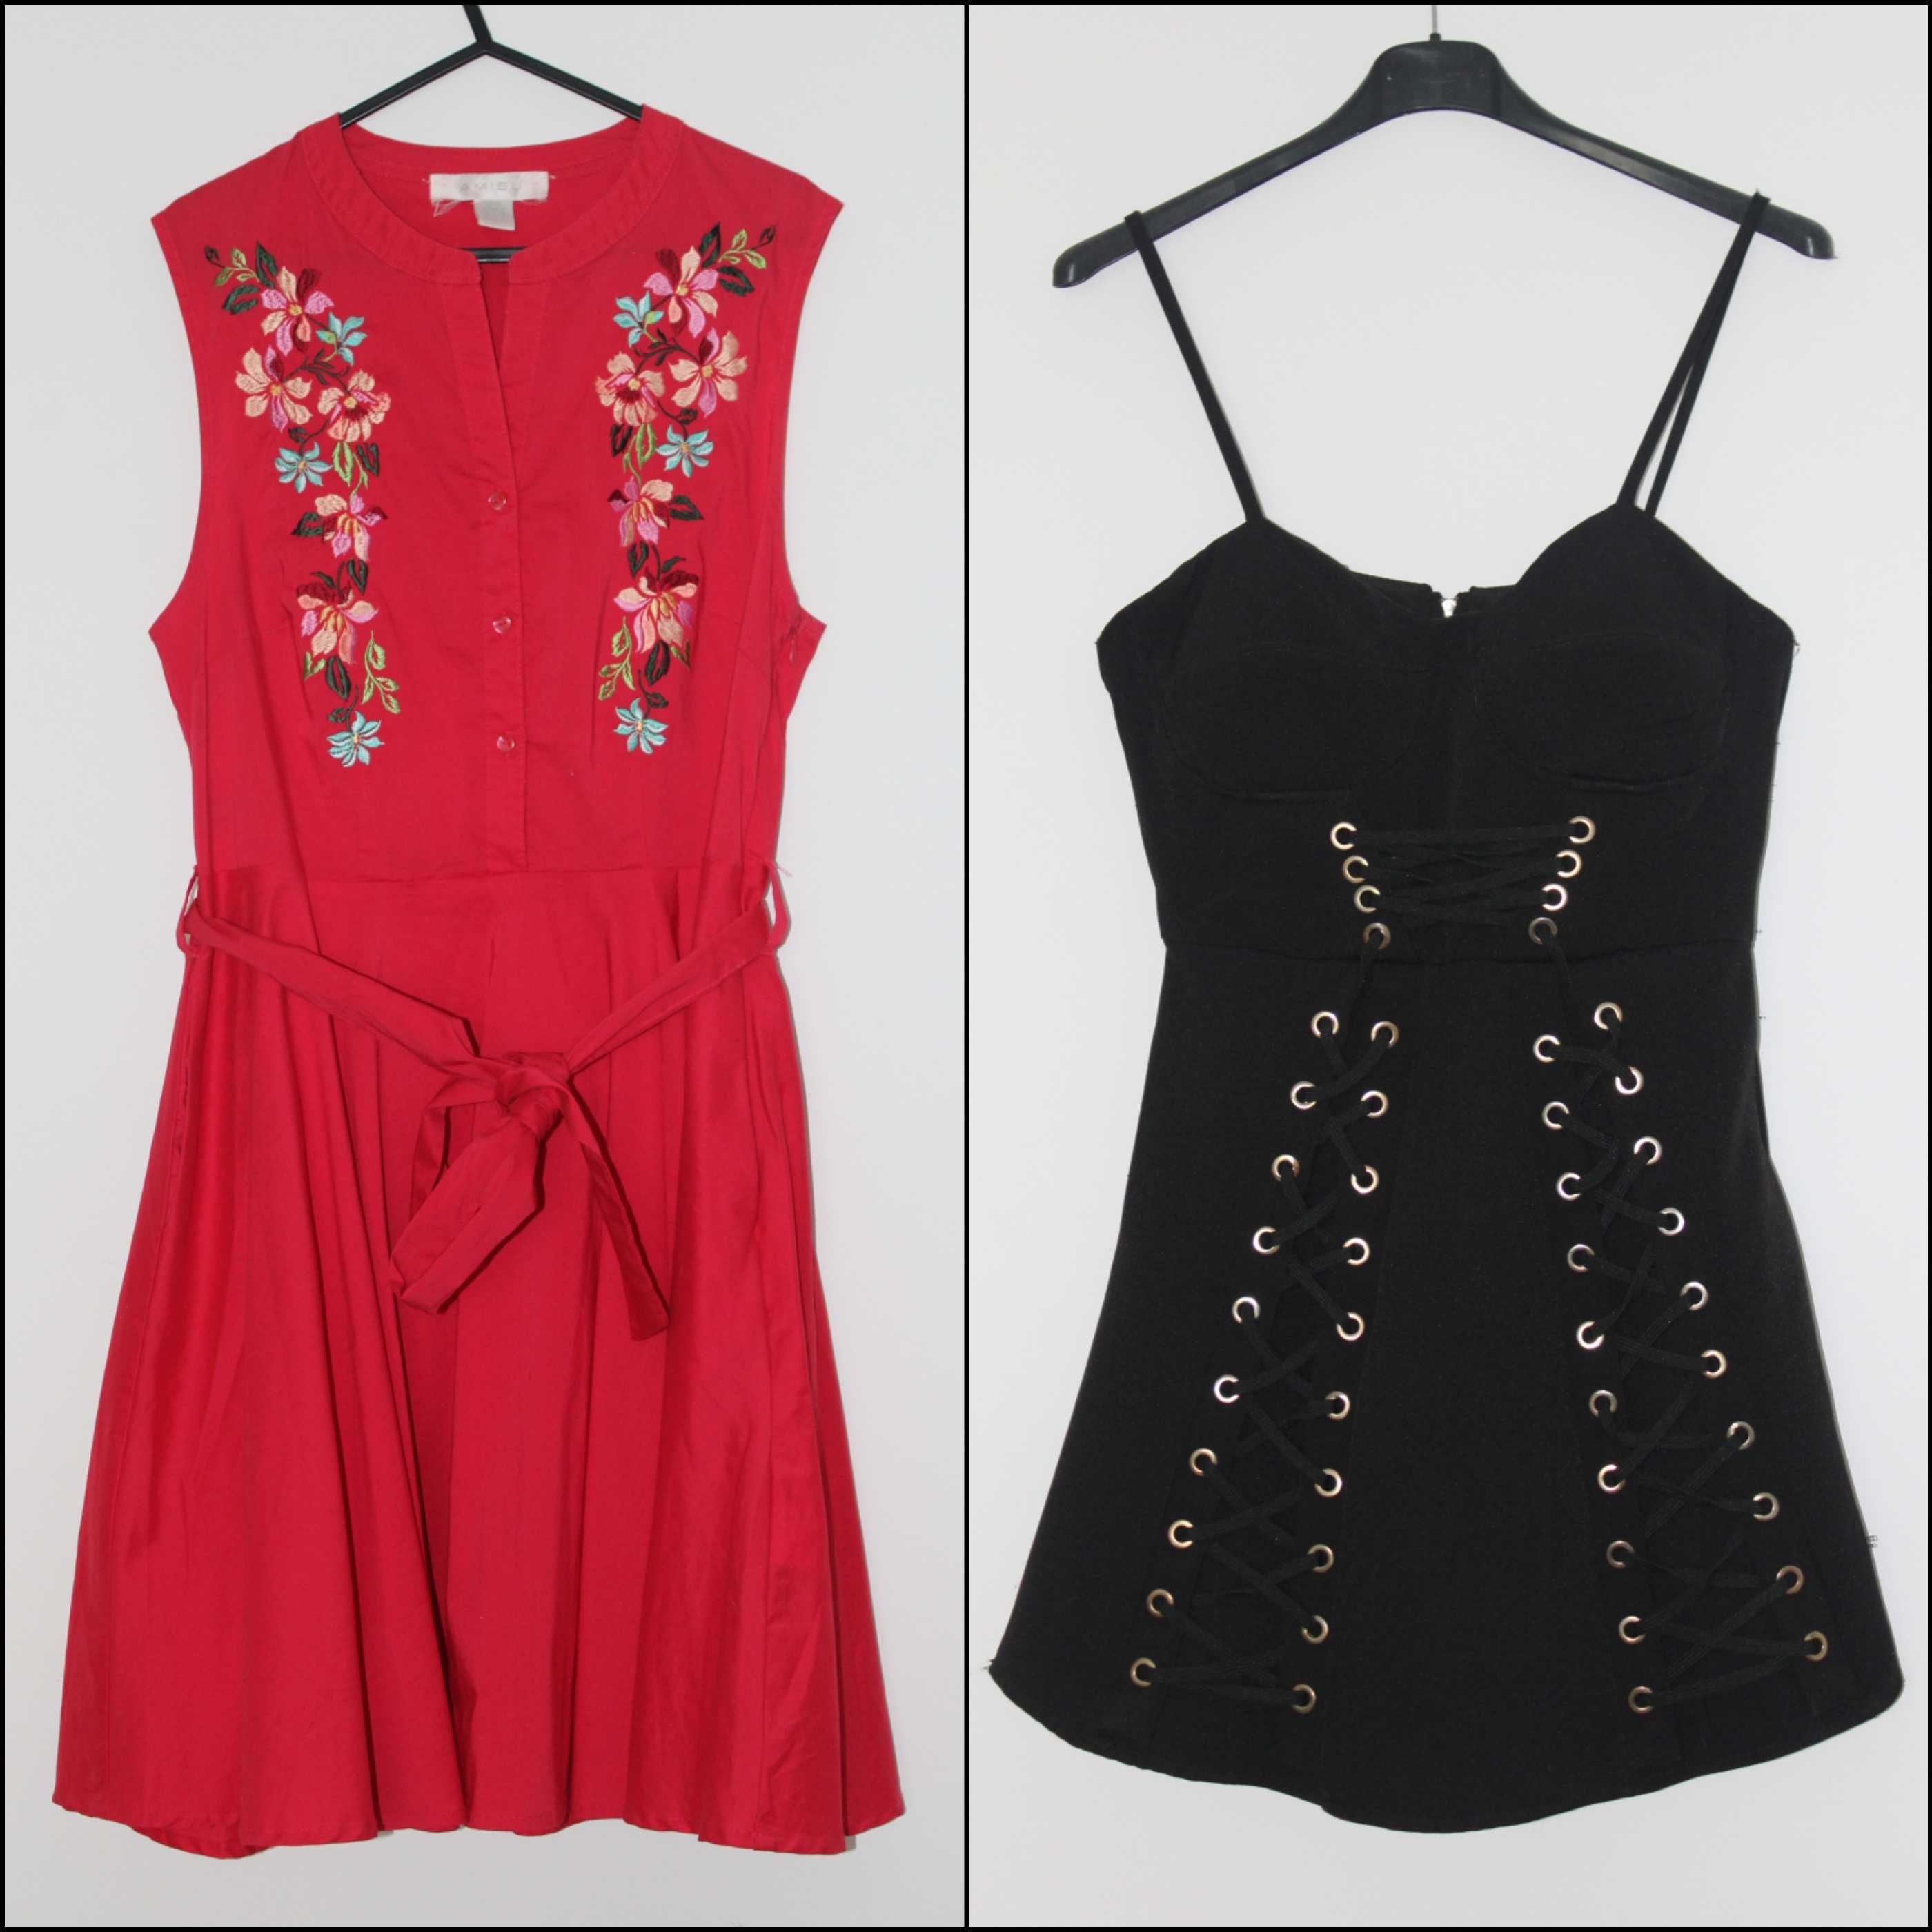 Дамски рокли, EUR: M, червена Amisу и черна